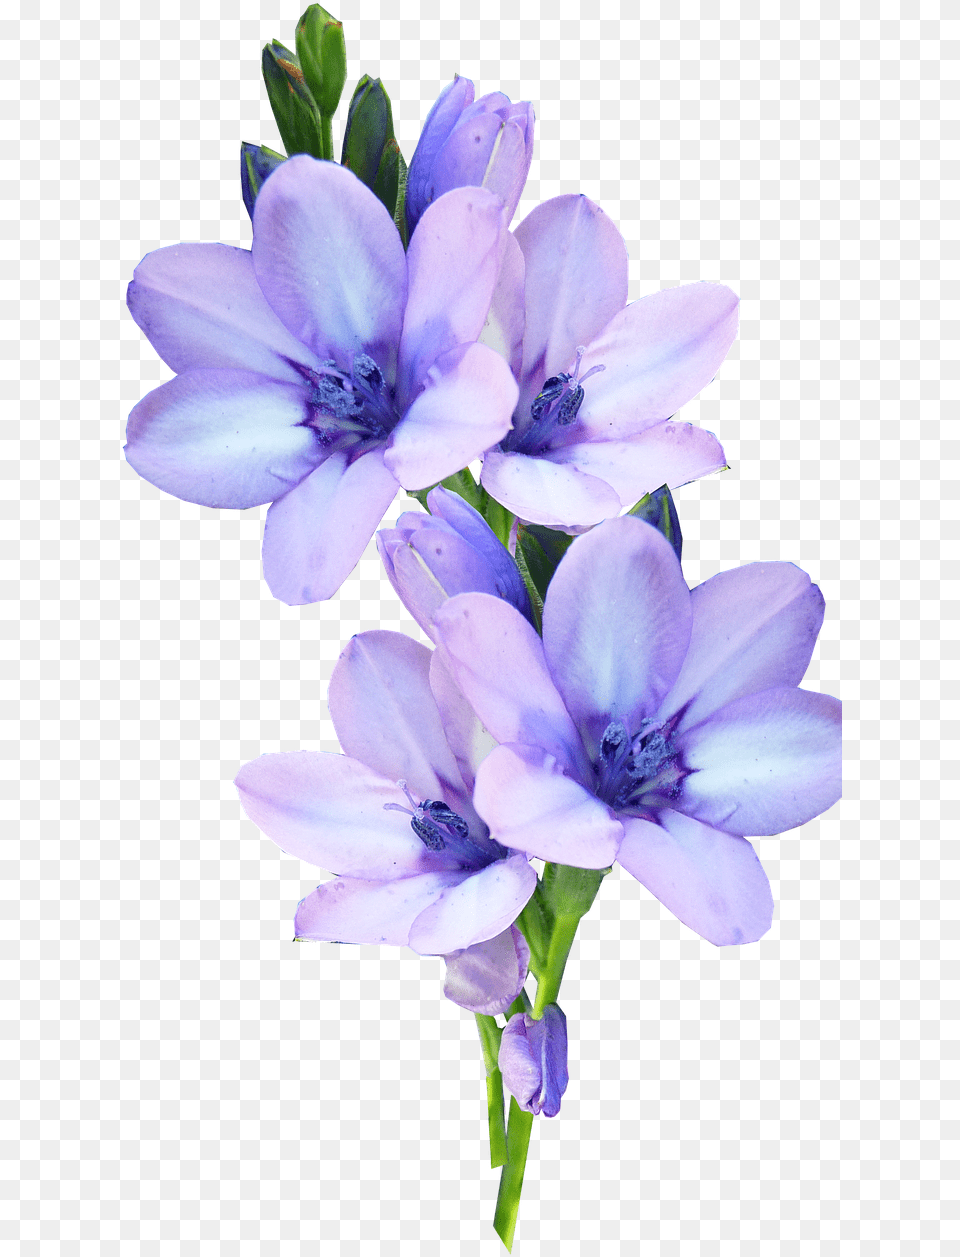 Pastel Flowers Picture Pastel Purple Flowers Transparent Background, Flower, Geranium, Plant, Petal Free Png Download